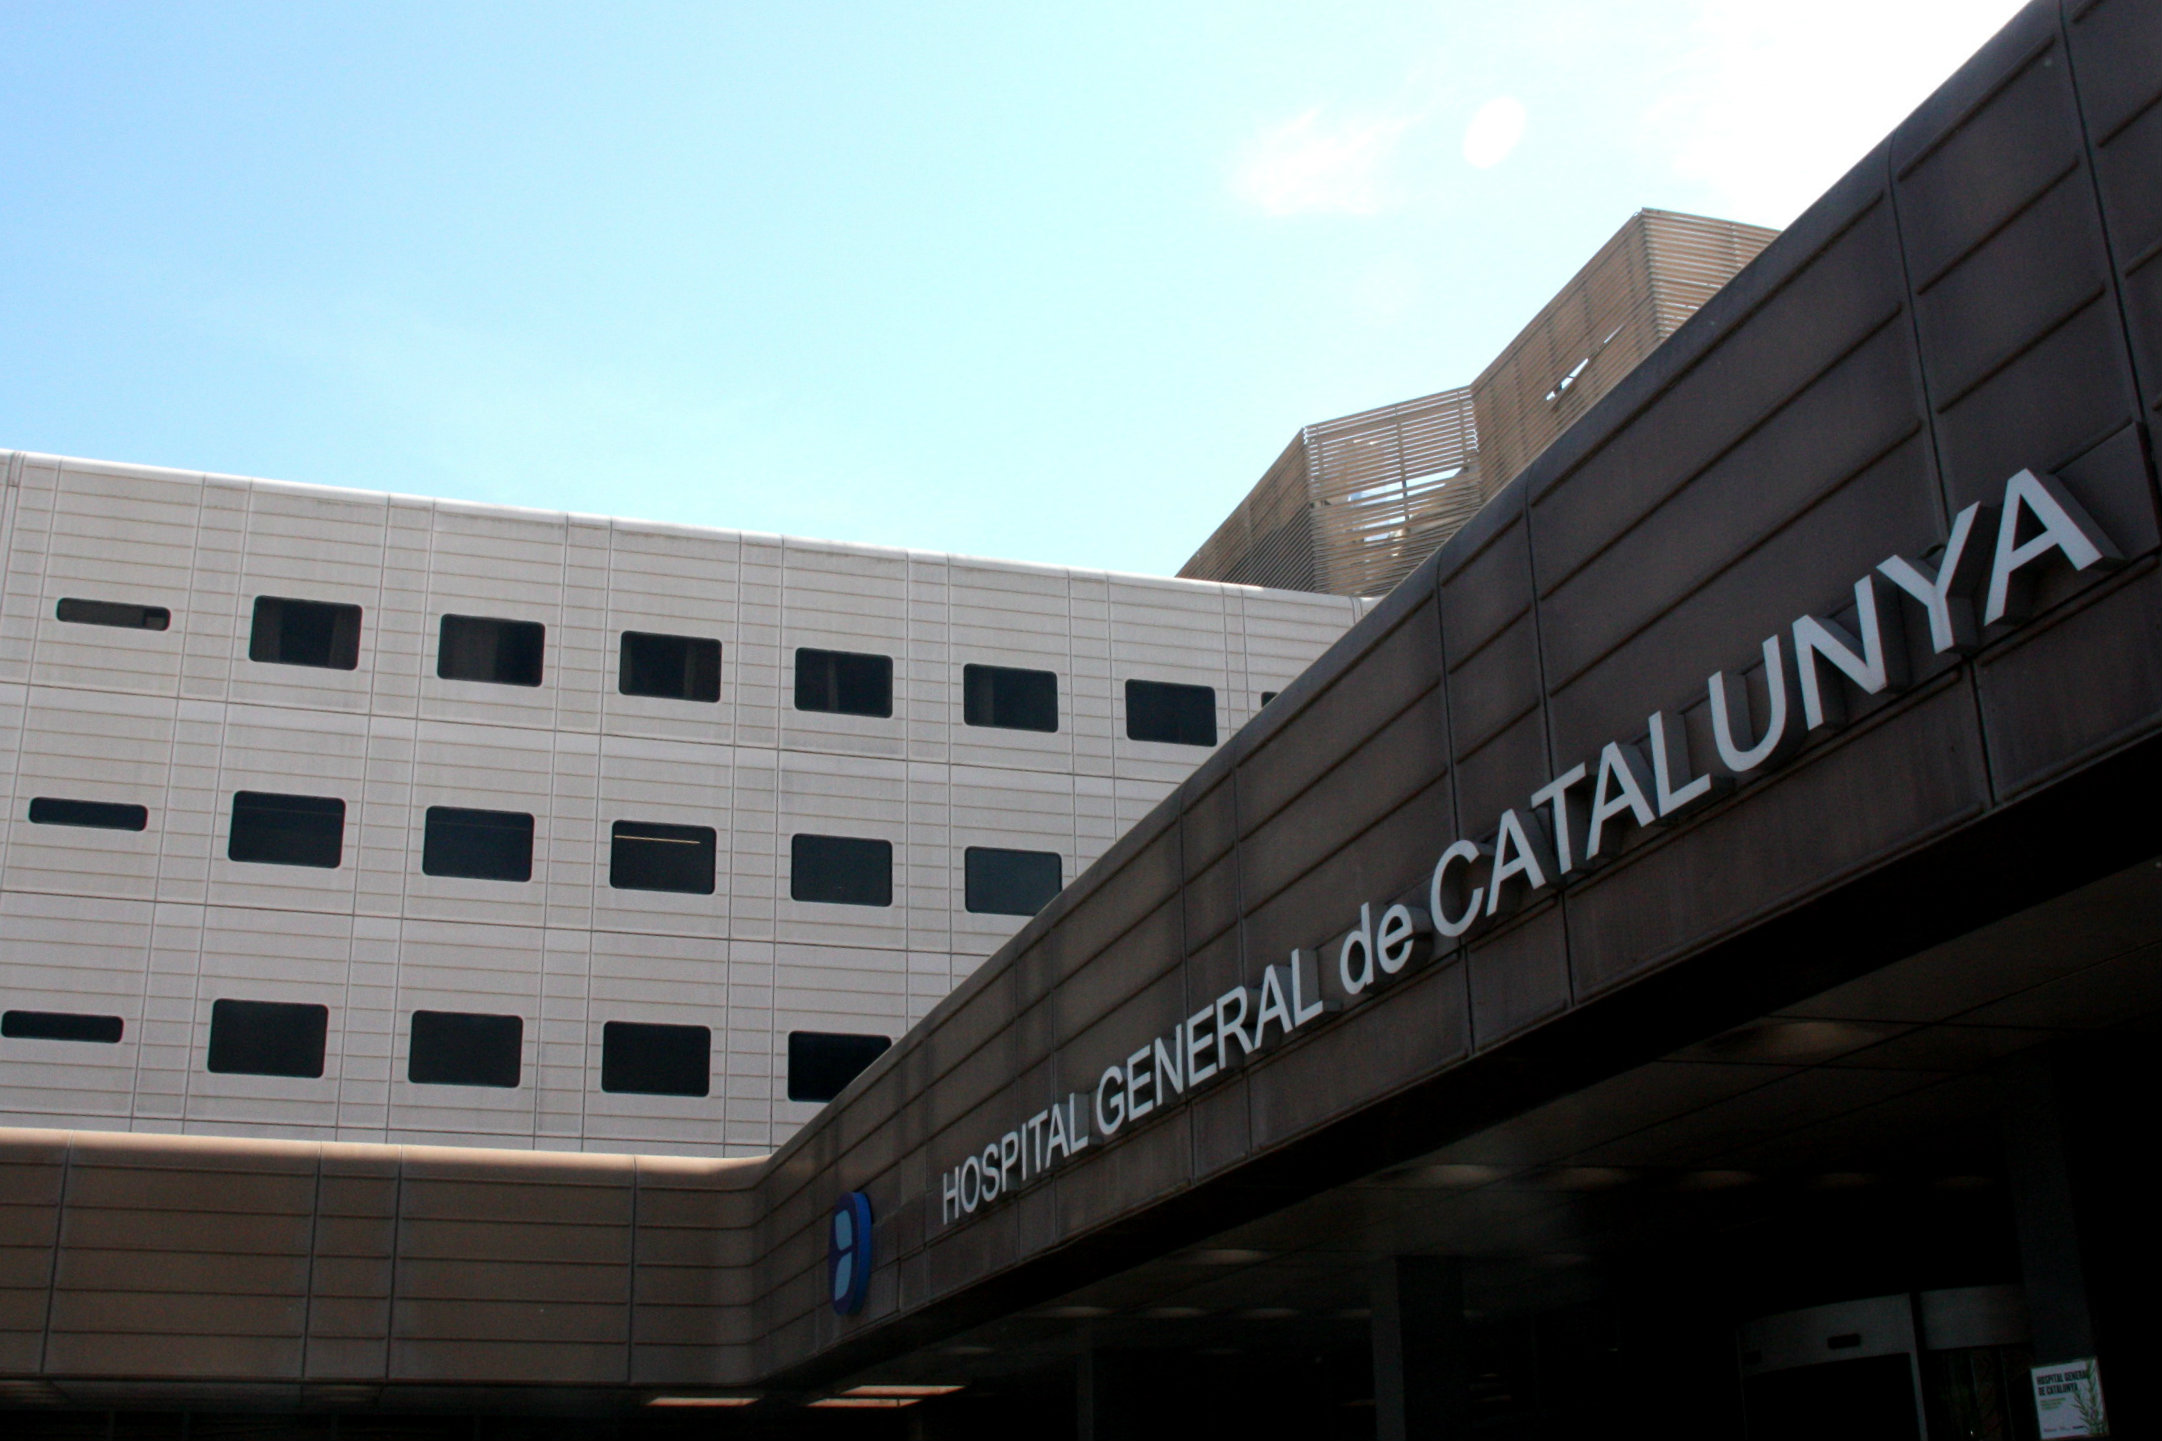 l'Hospital general de Catalunya